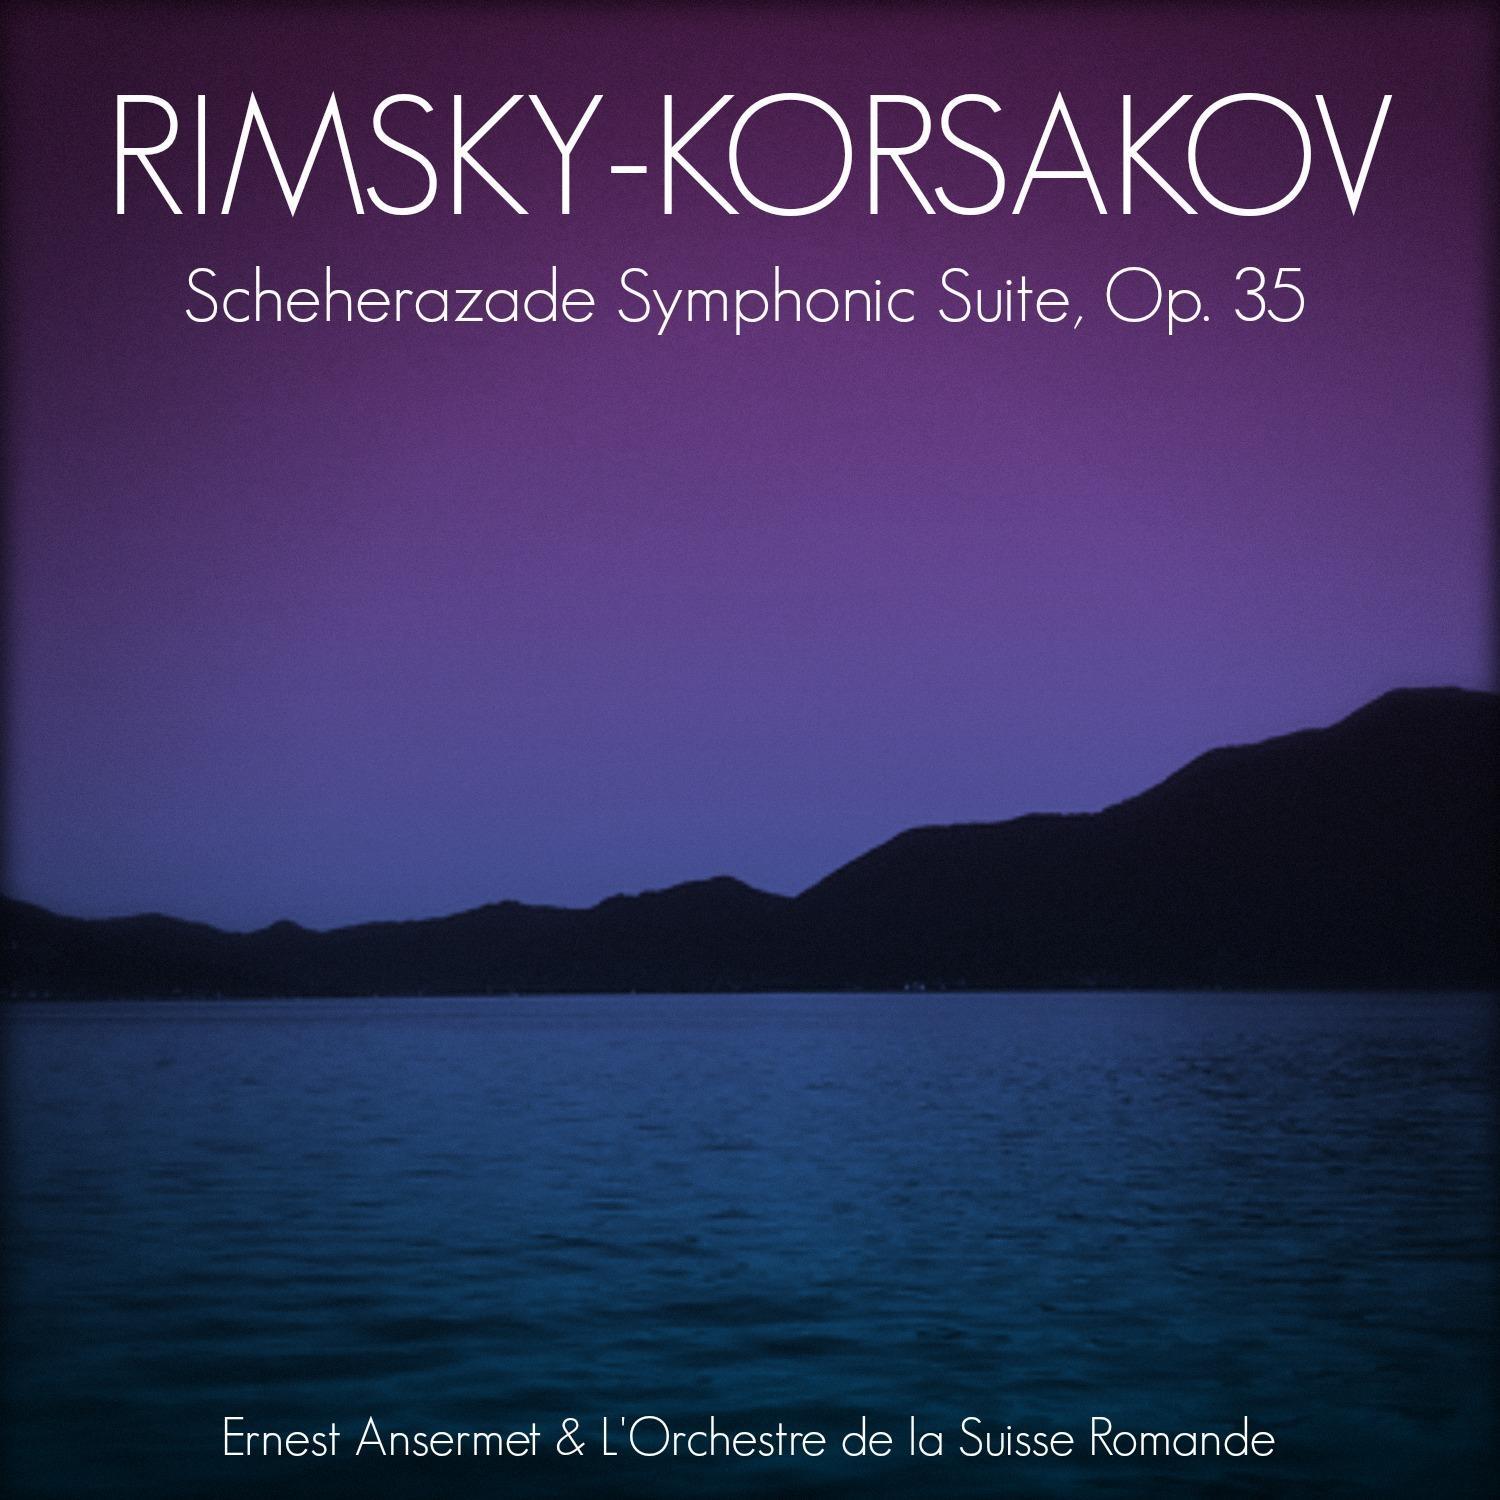 Rimsky-Korsakov: Scheherazade Symphonic Suite, Op. 35